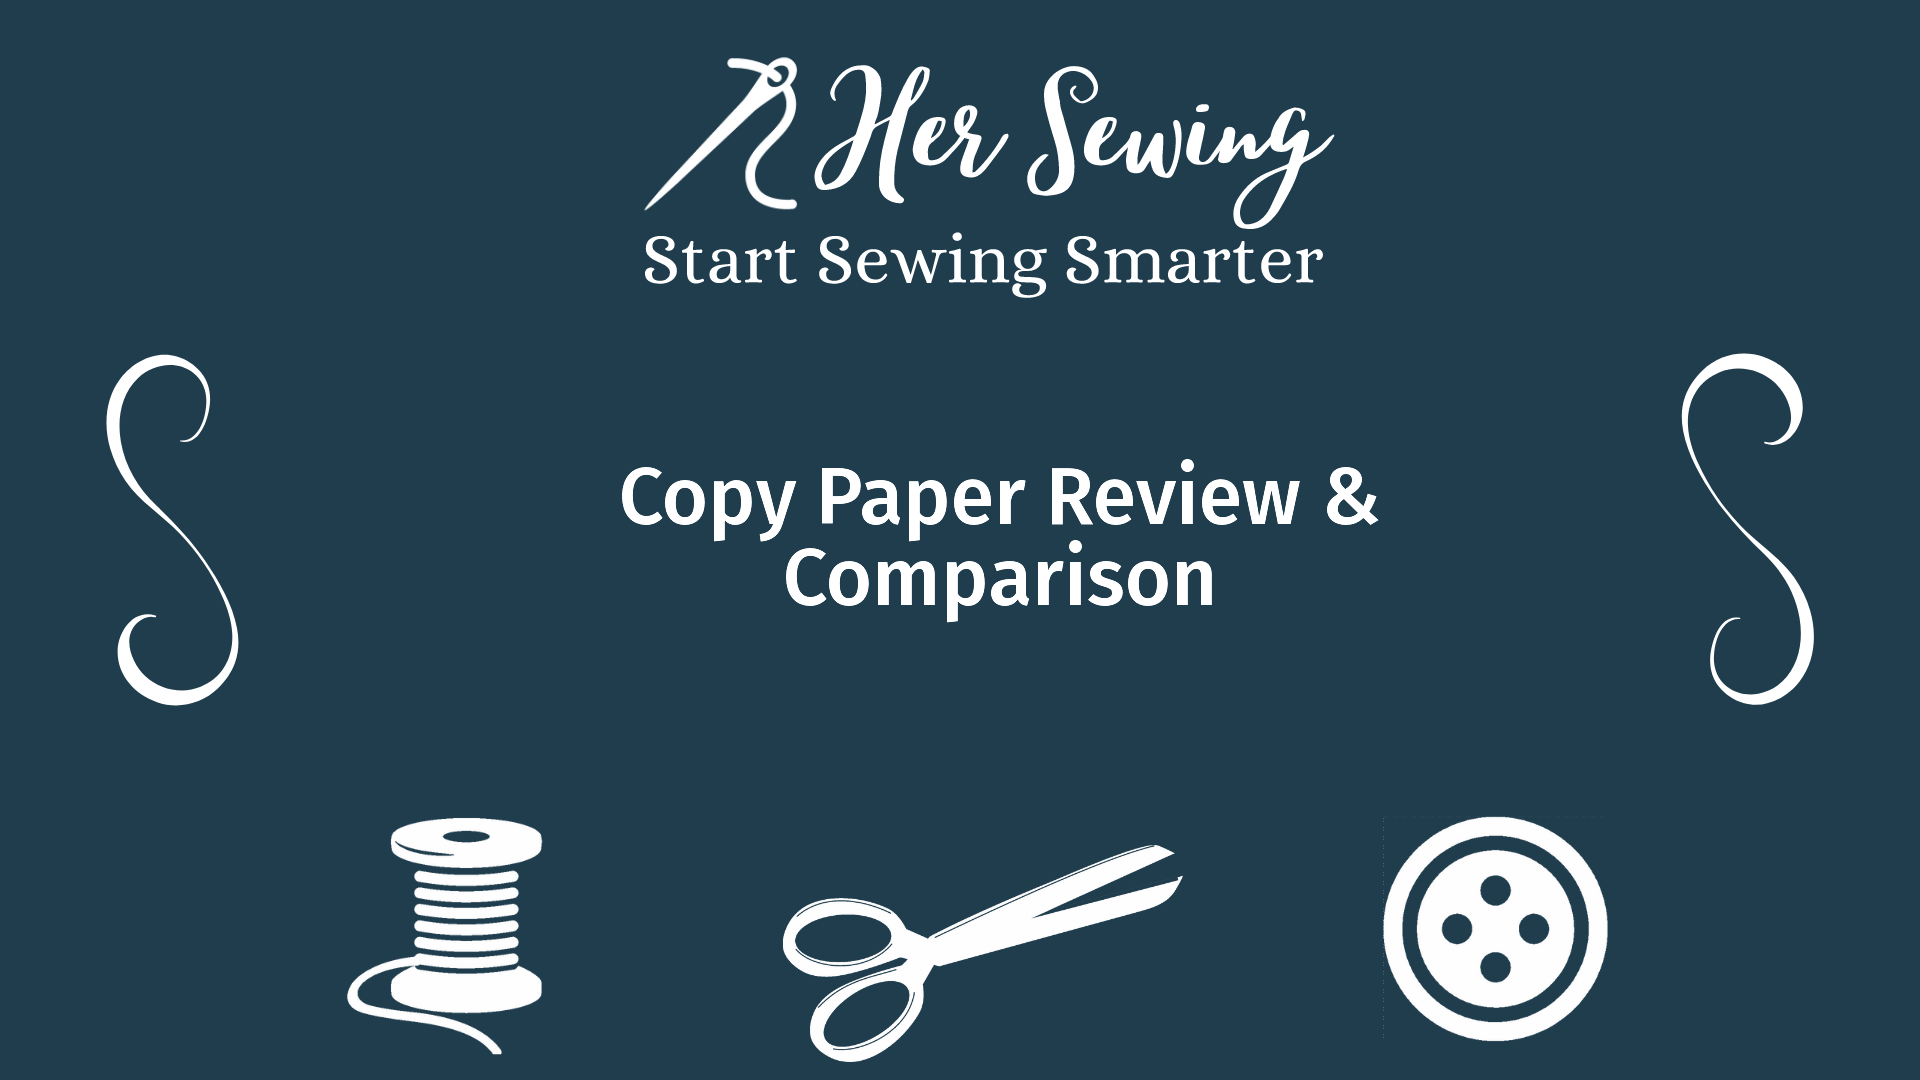 Copy Paper Review & Comparison